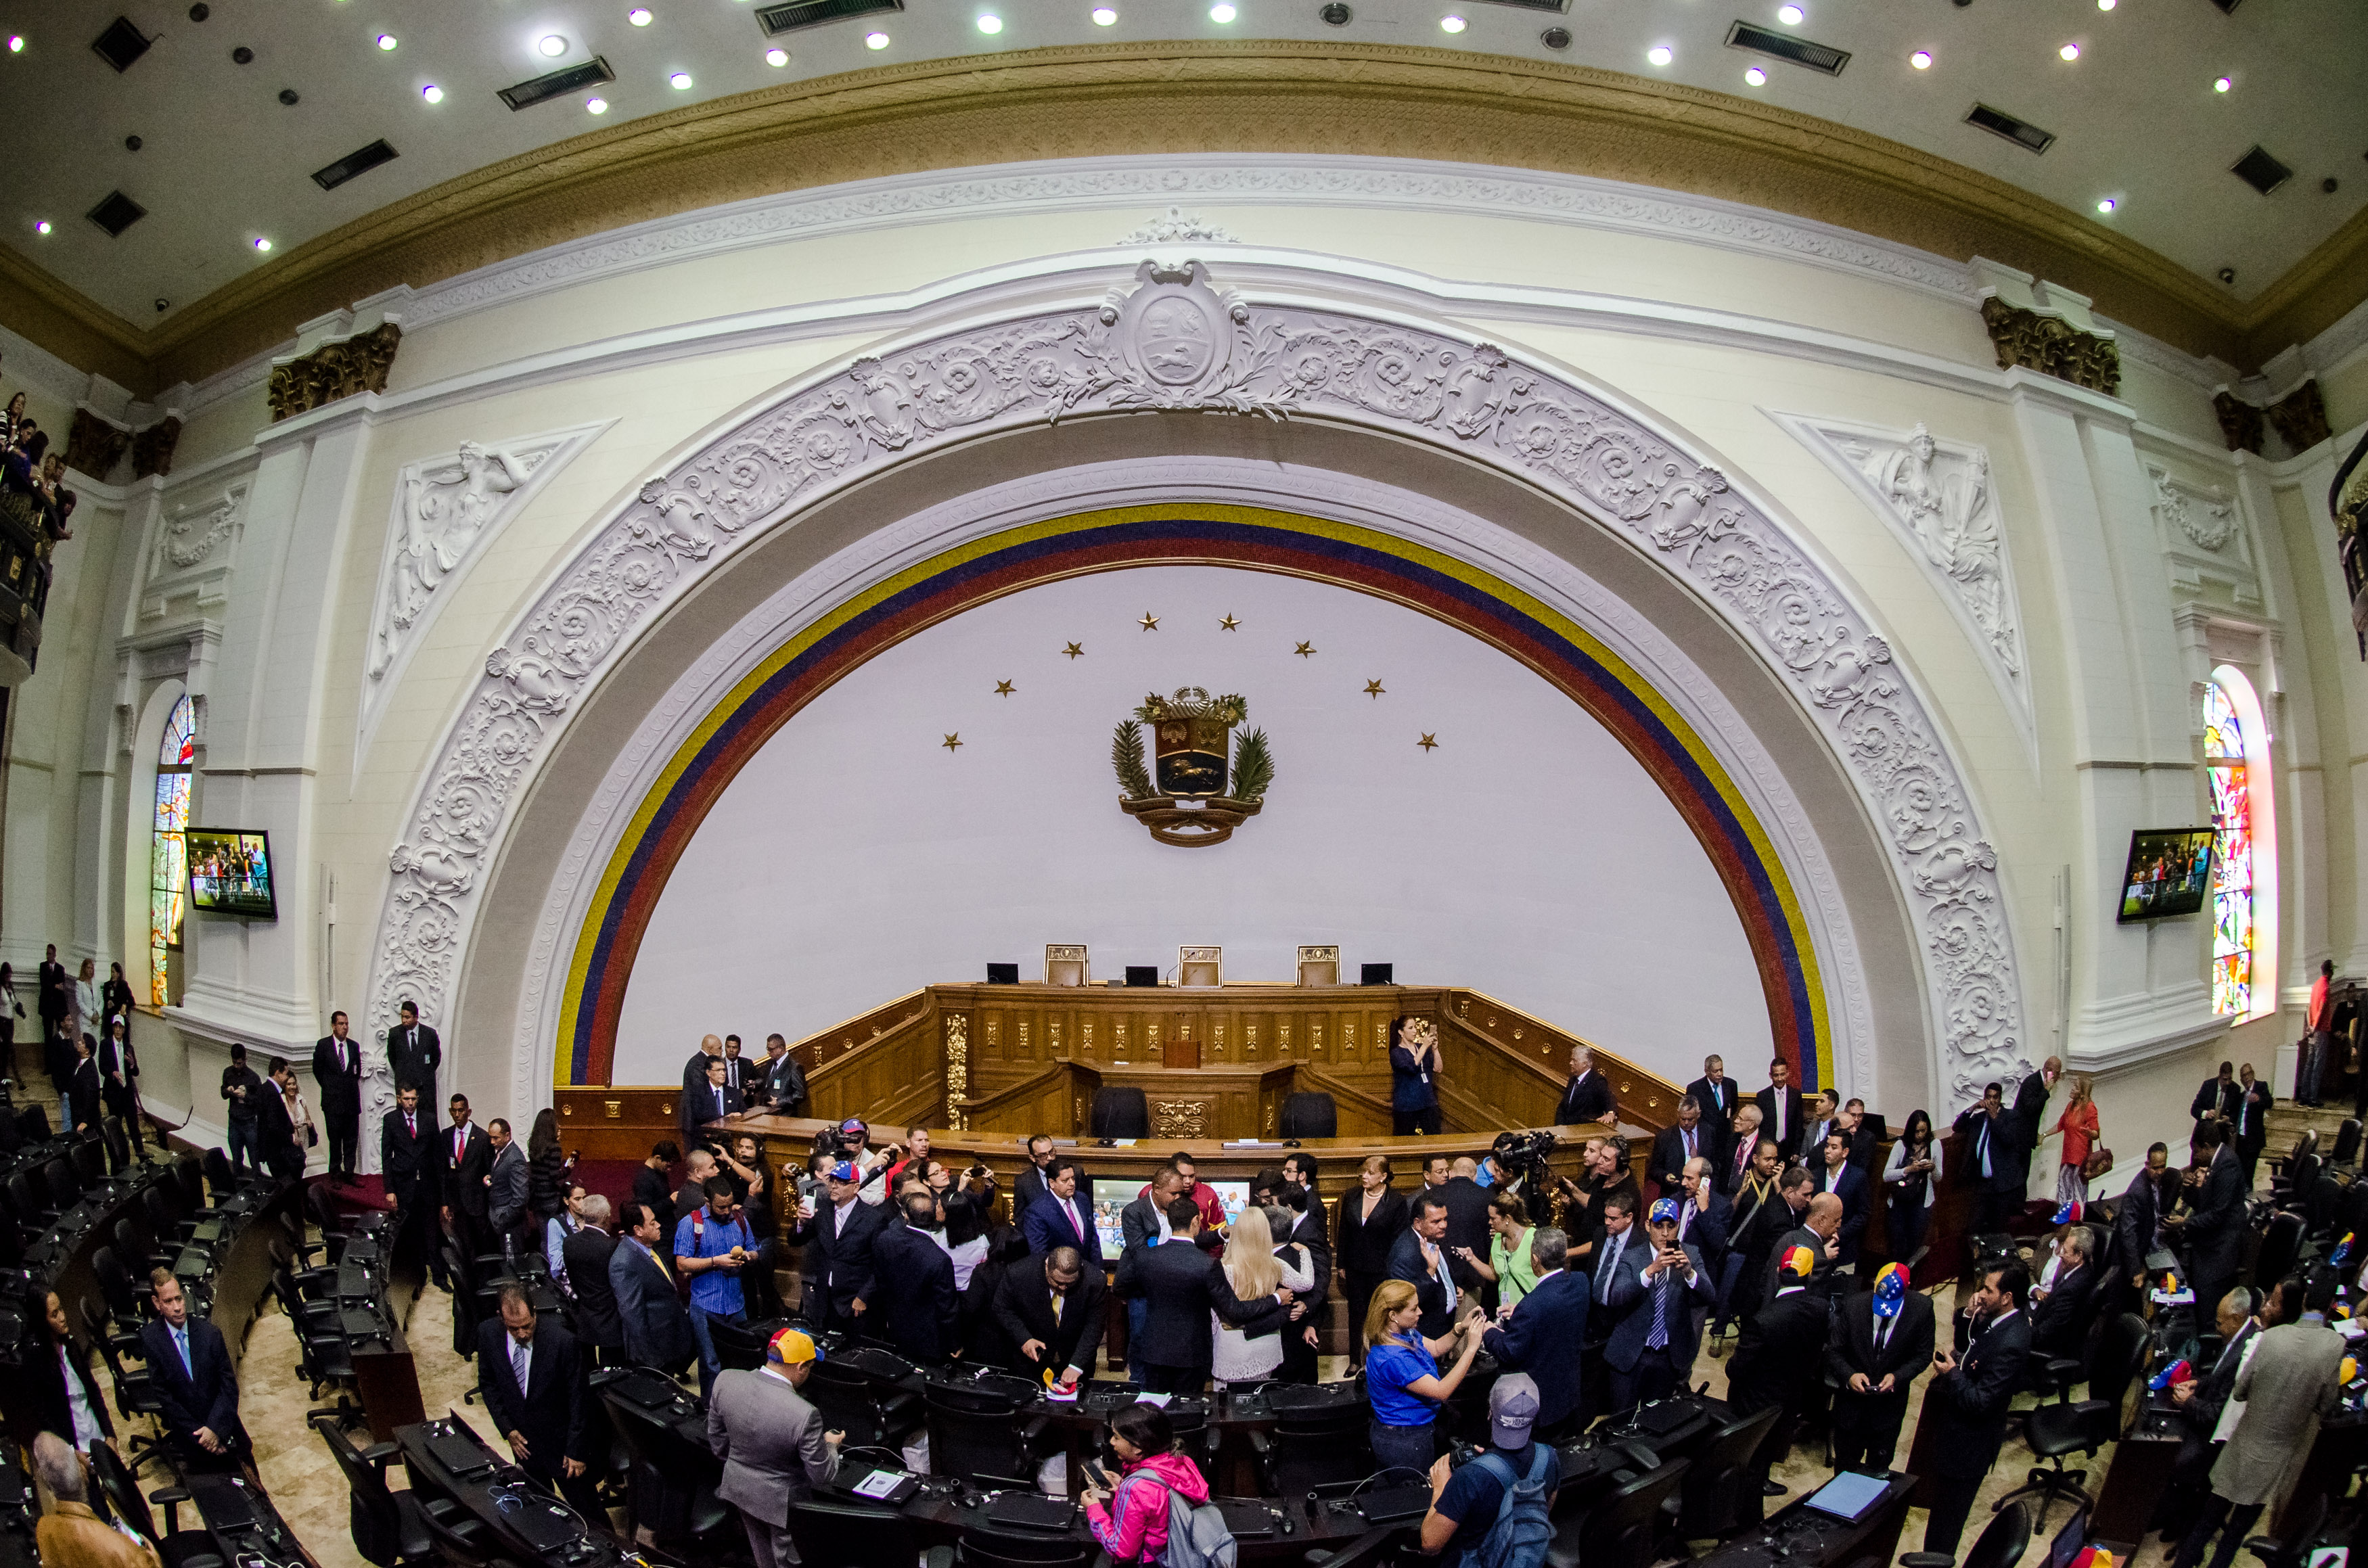 Una nueva propuesta presentada por un grupo de parlamentarios de la AN, que toma como referencia el deterioro de la calidad de vida de los venezolanos y del poder adquisitivo, plantea que se diseñe una estrategia que faciliten el cambio democrático en Venezuela.